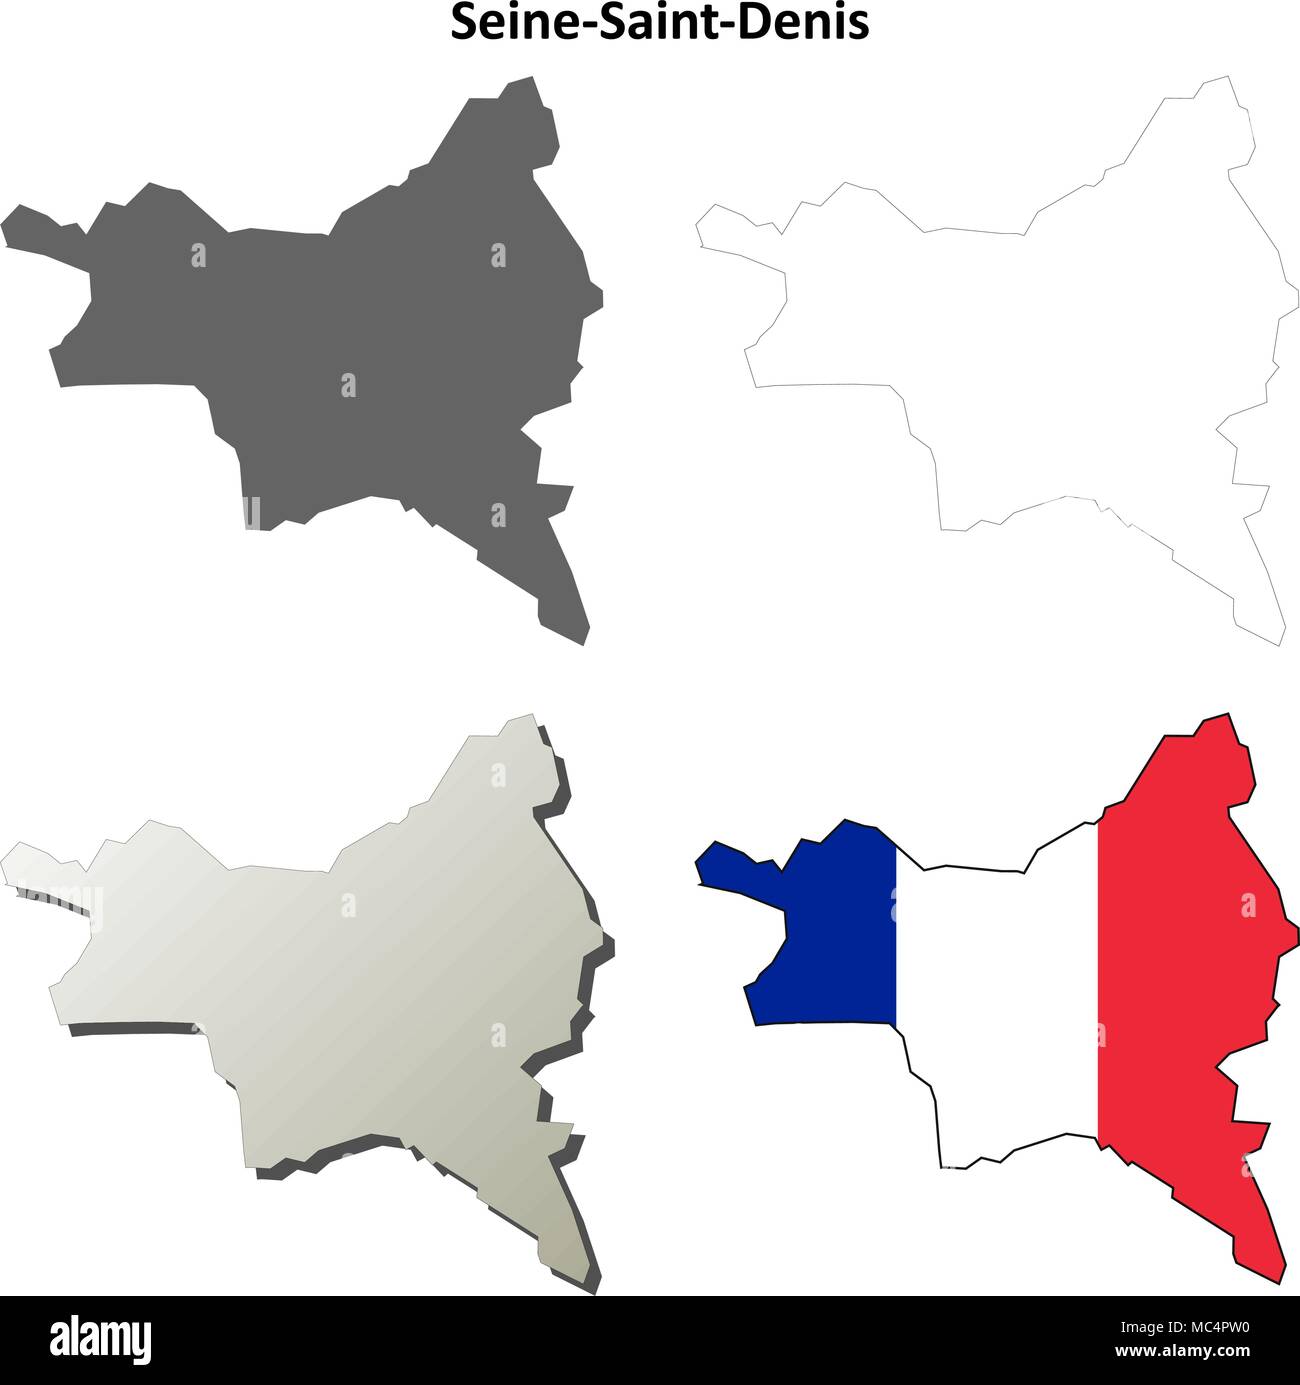 Seine-Saint-Denis, Ile-de-France outline map set Stock Vector